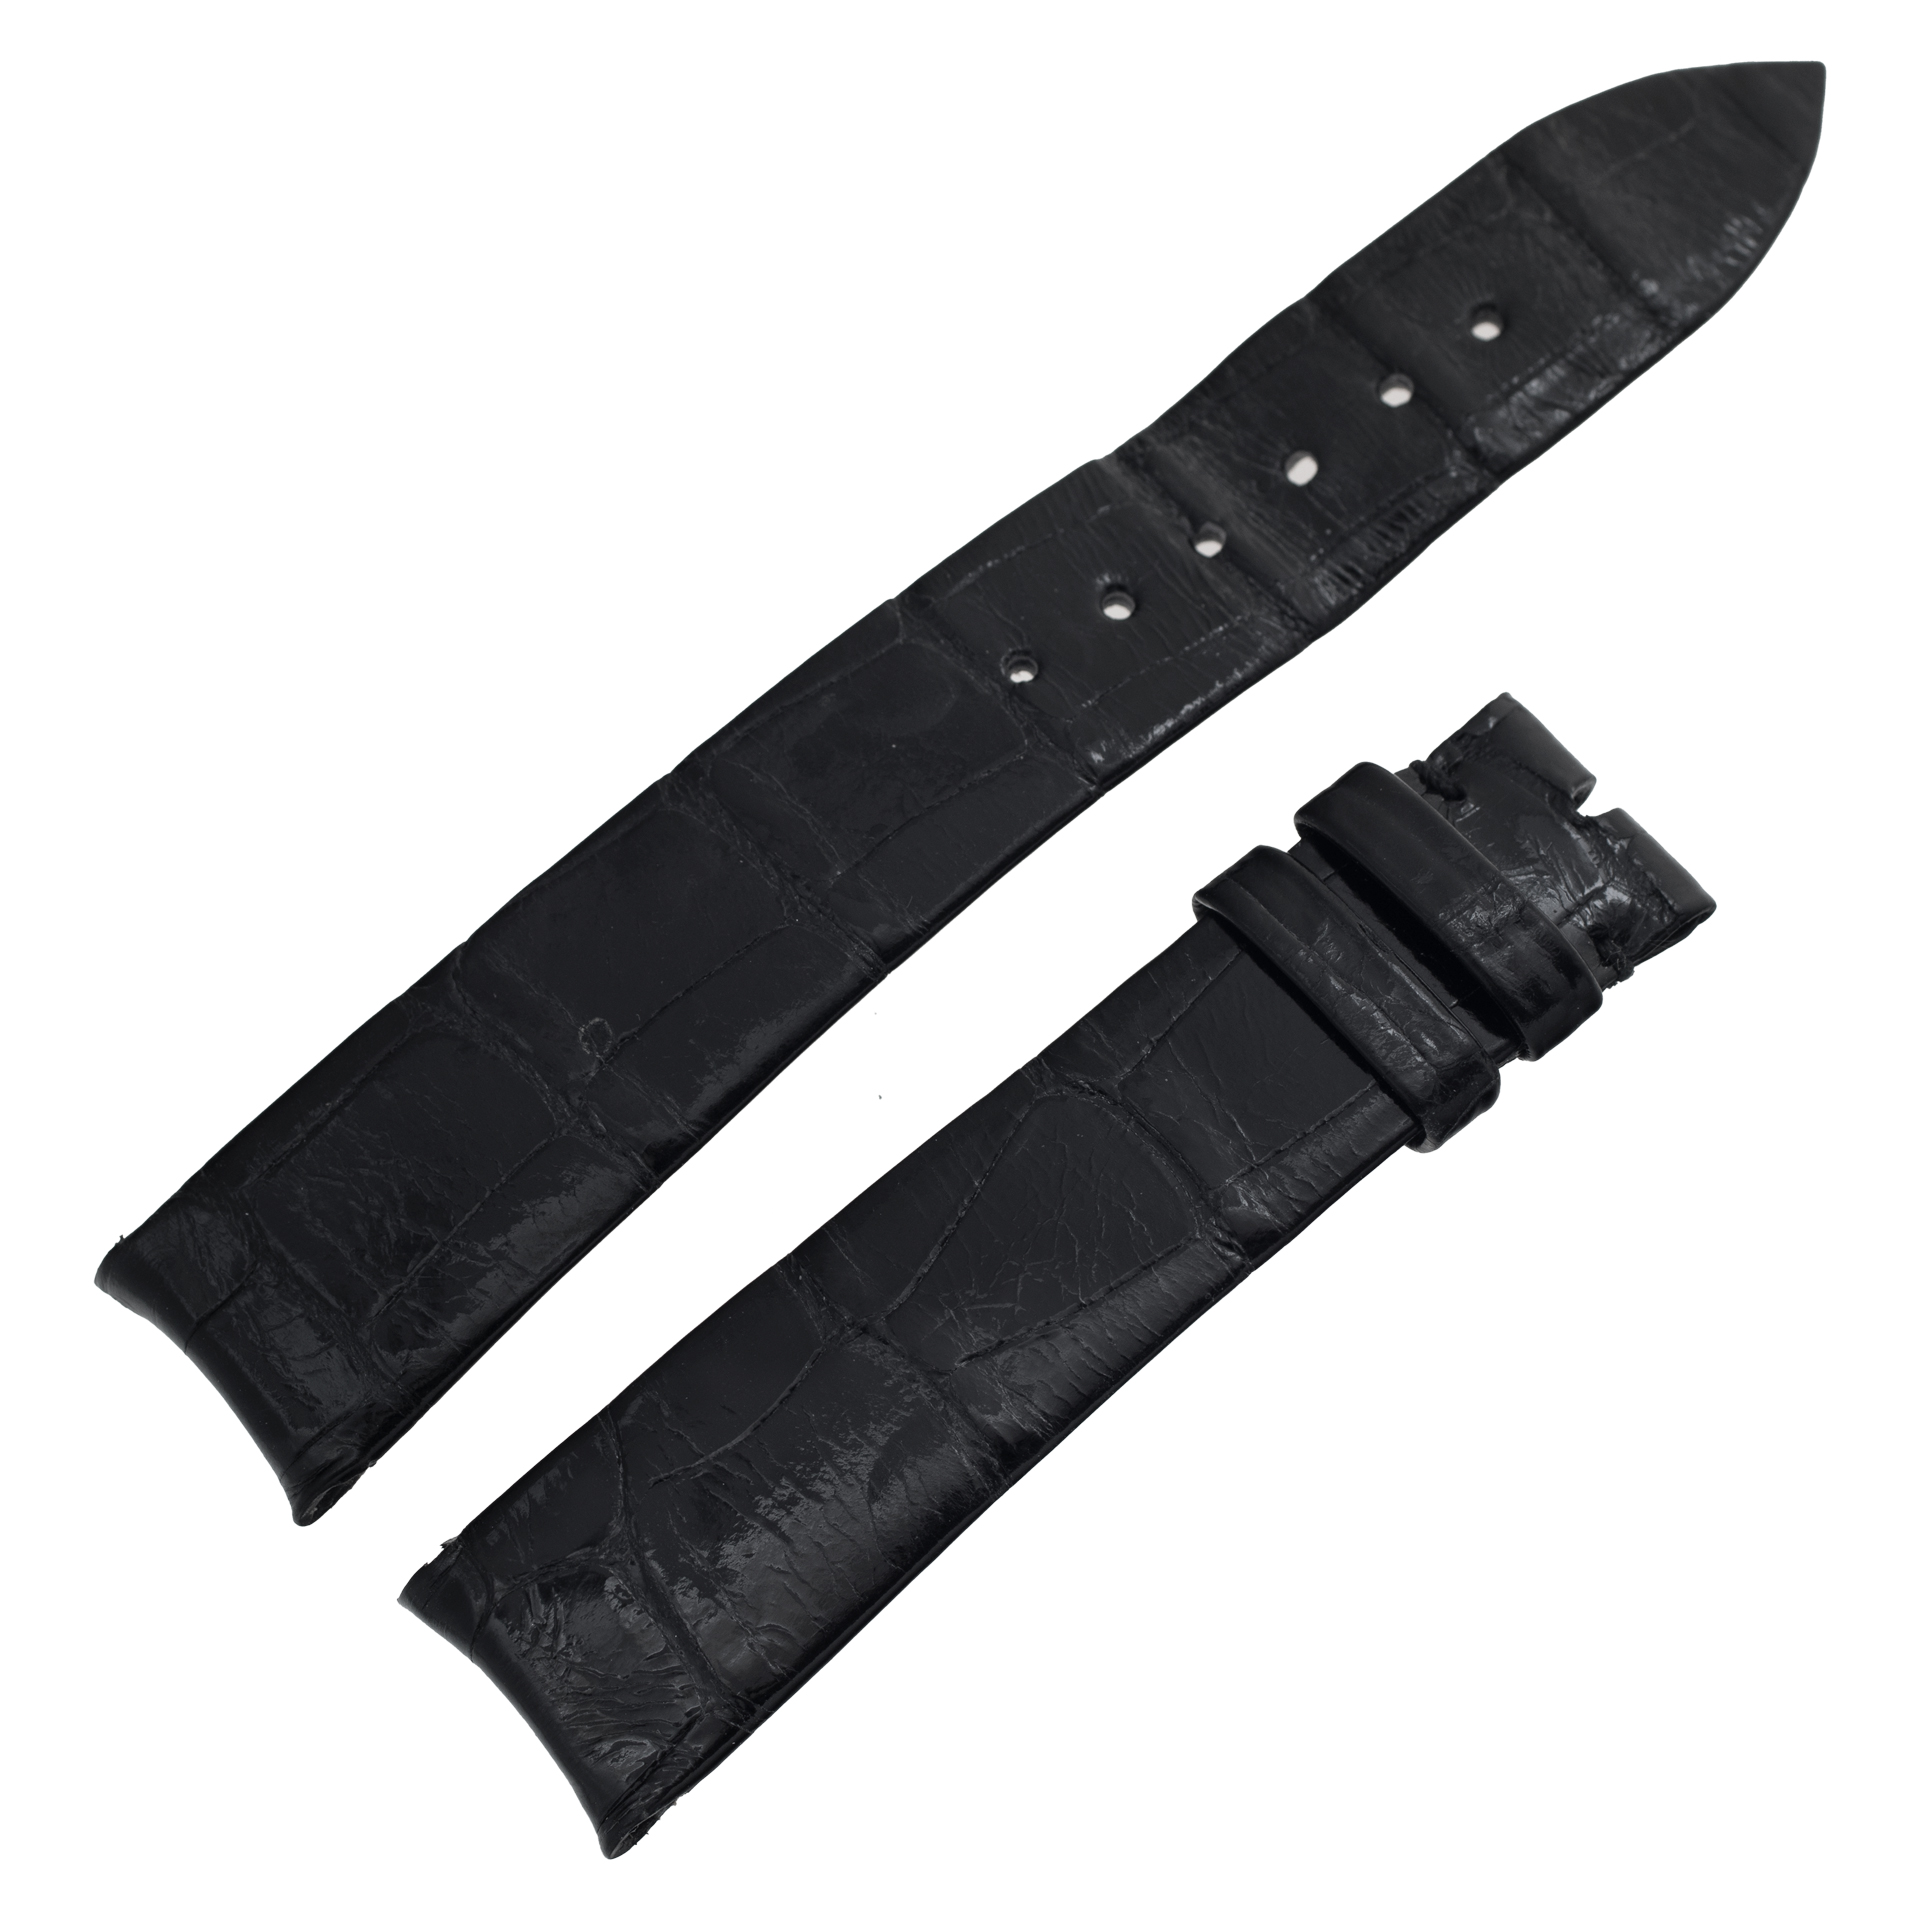 Audemars Piguet shiny black alligator strap (17mm x 15mm) shop-worn